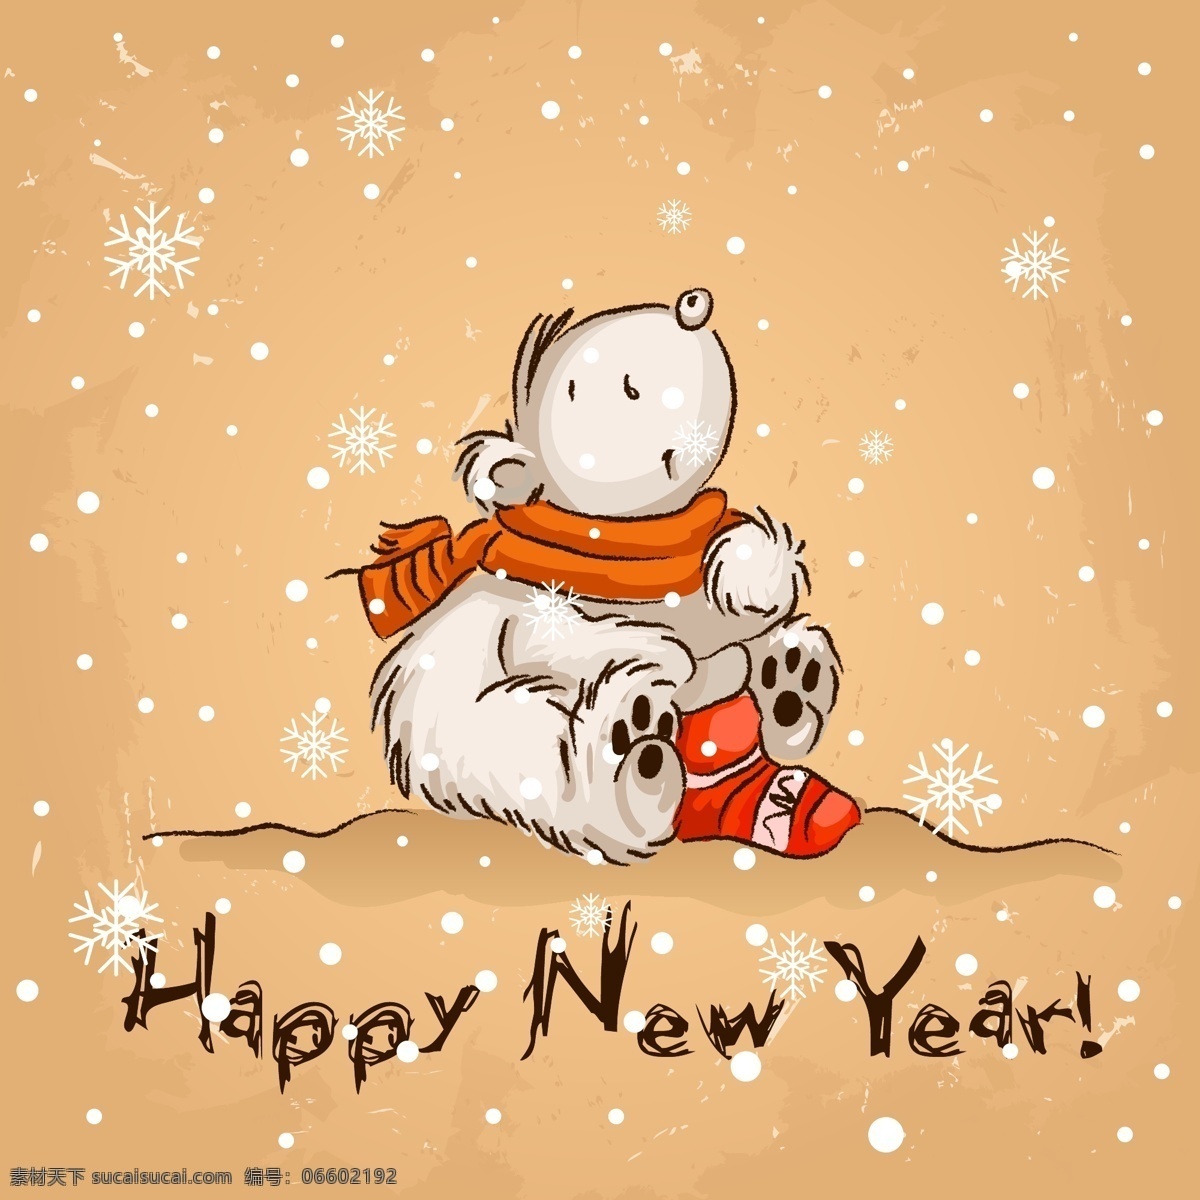 圣诞节 童趣 卡片 happy new year 北极熊 背景 卡通 模板 设计稿 雪花 图案 节日大全 源文件 节日素材